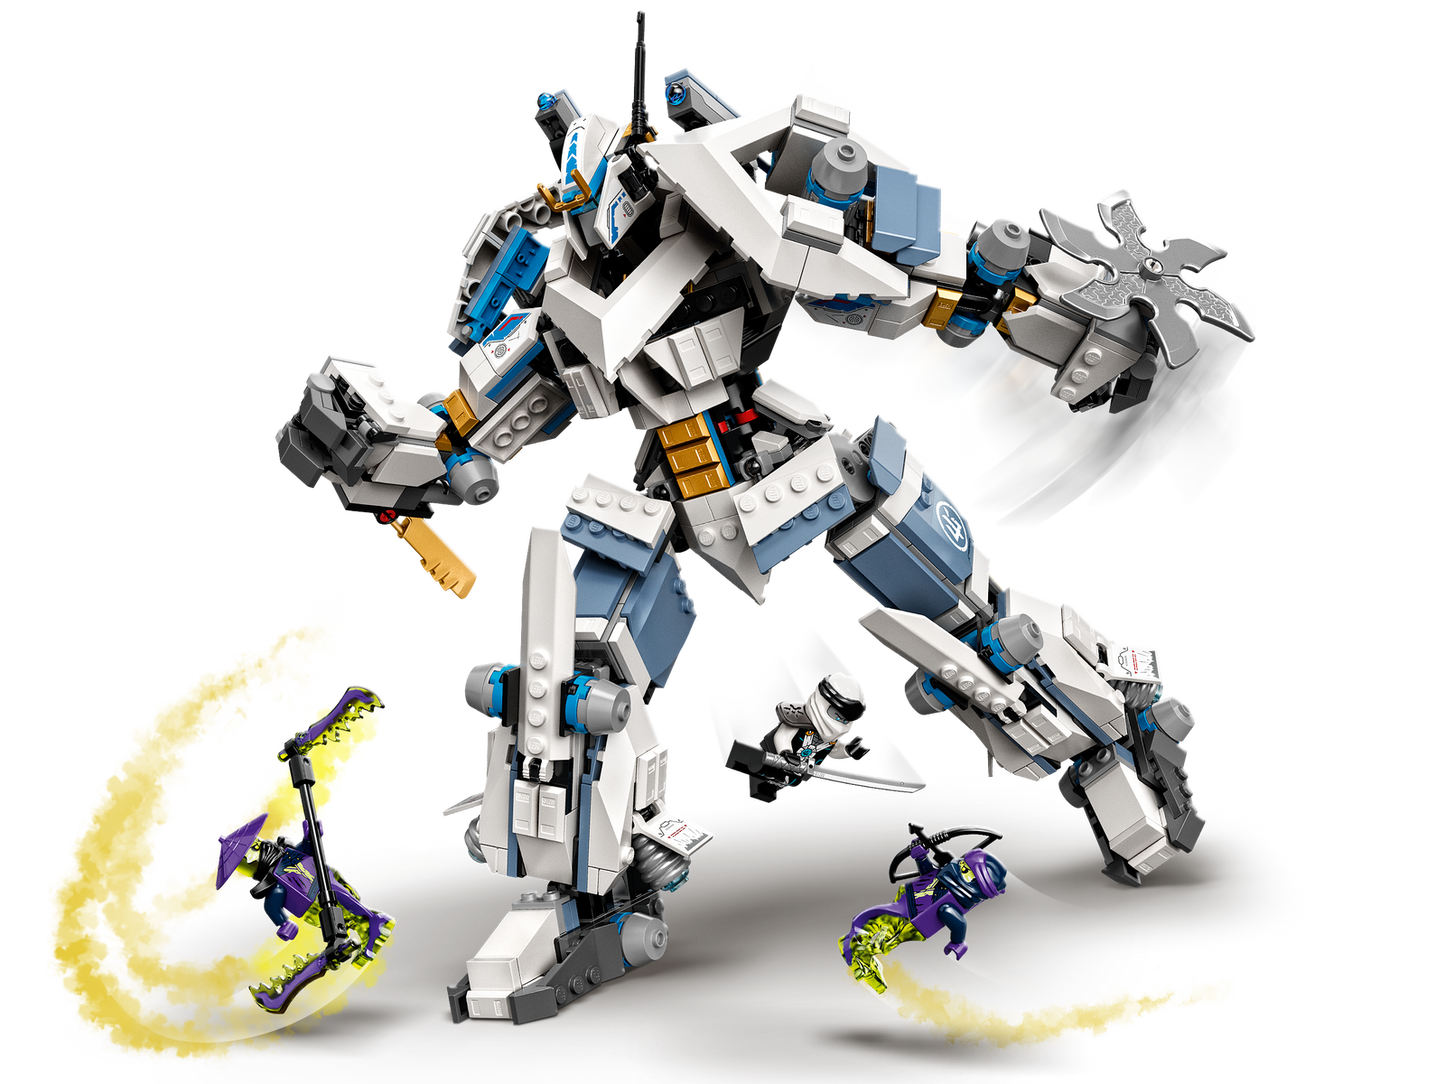 LEGO Ninjago Zane's Titan Mech Battle 71738